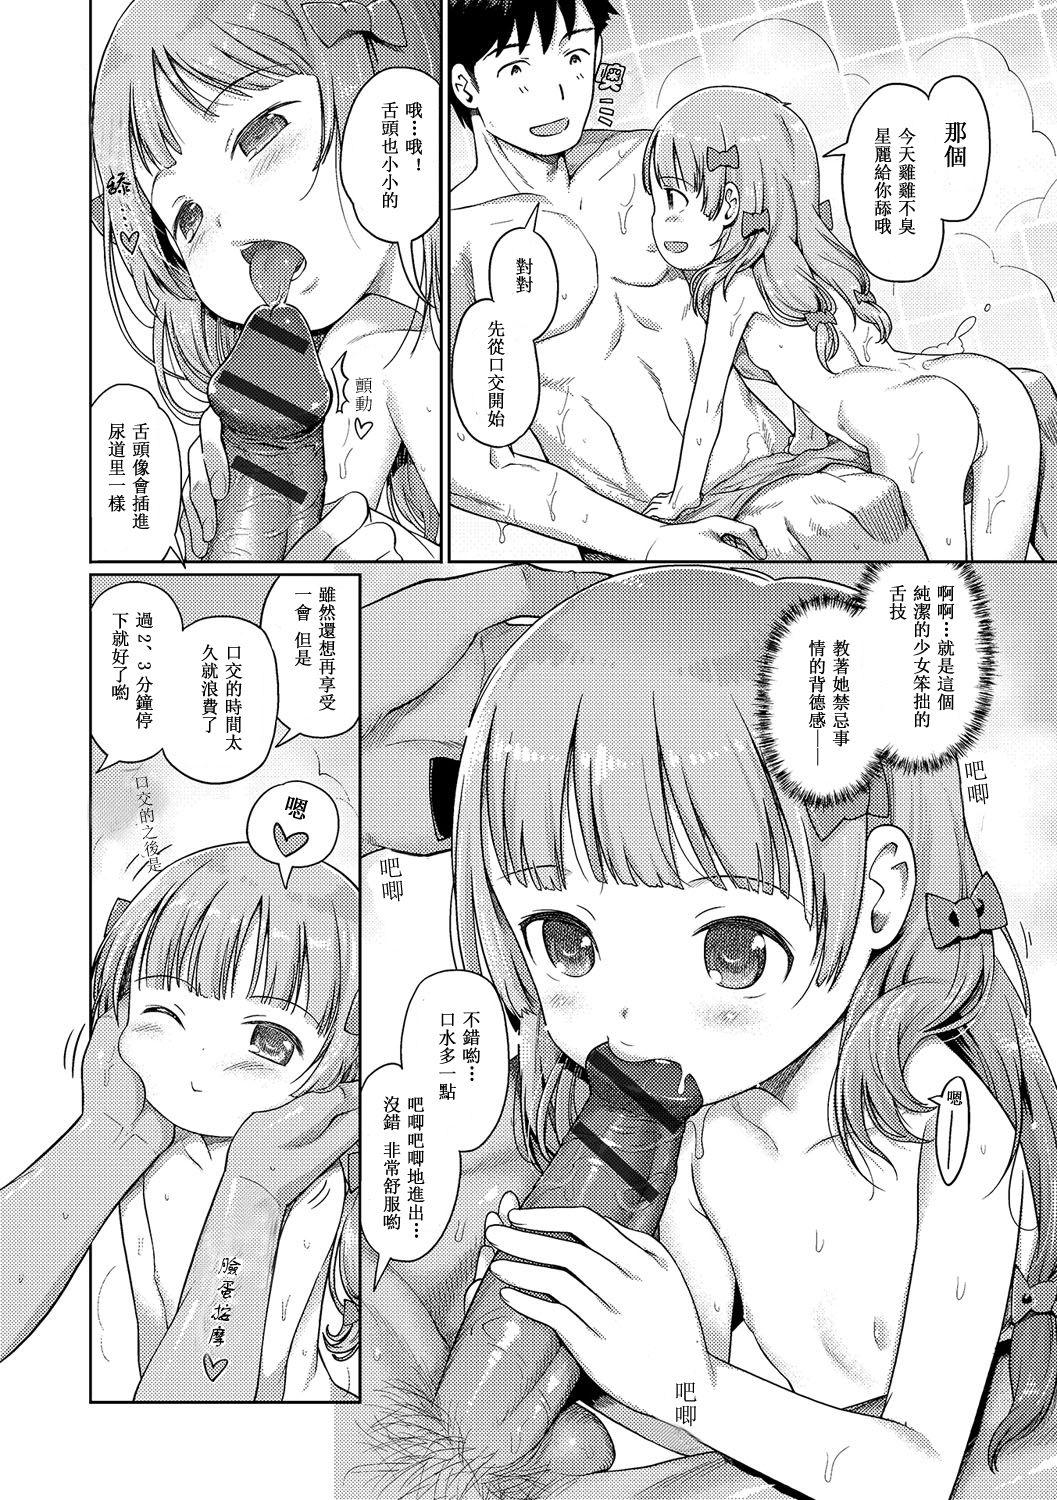 Culito Awa no Ohime-sama # 8 Fairy no Shinjin Kenshuu Futatabi? Vagina - Page 5